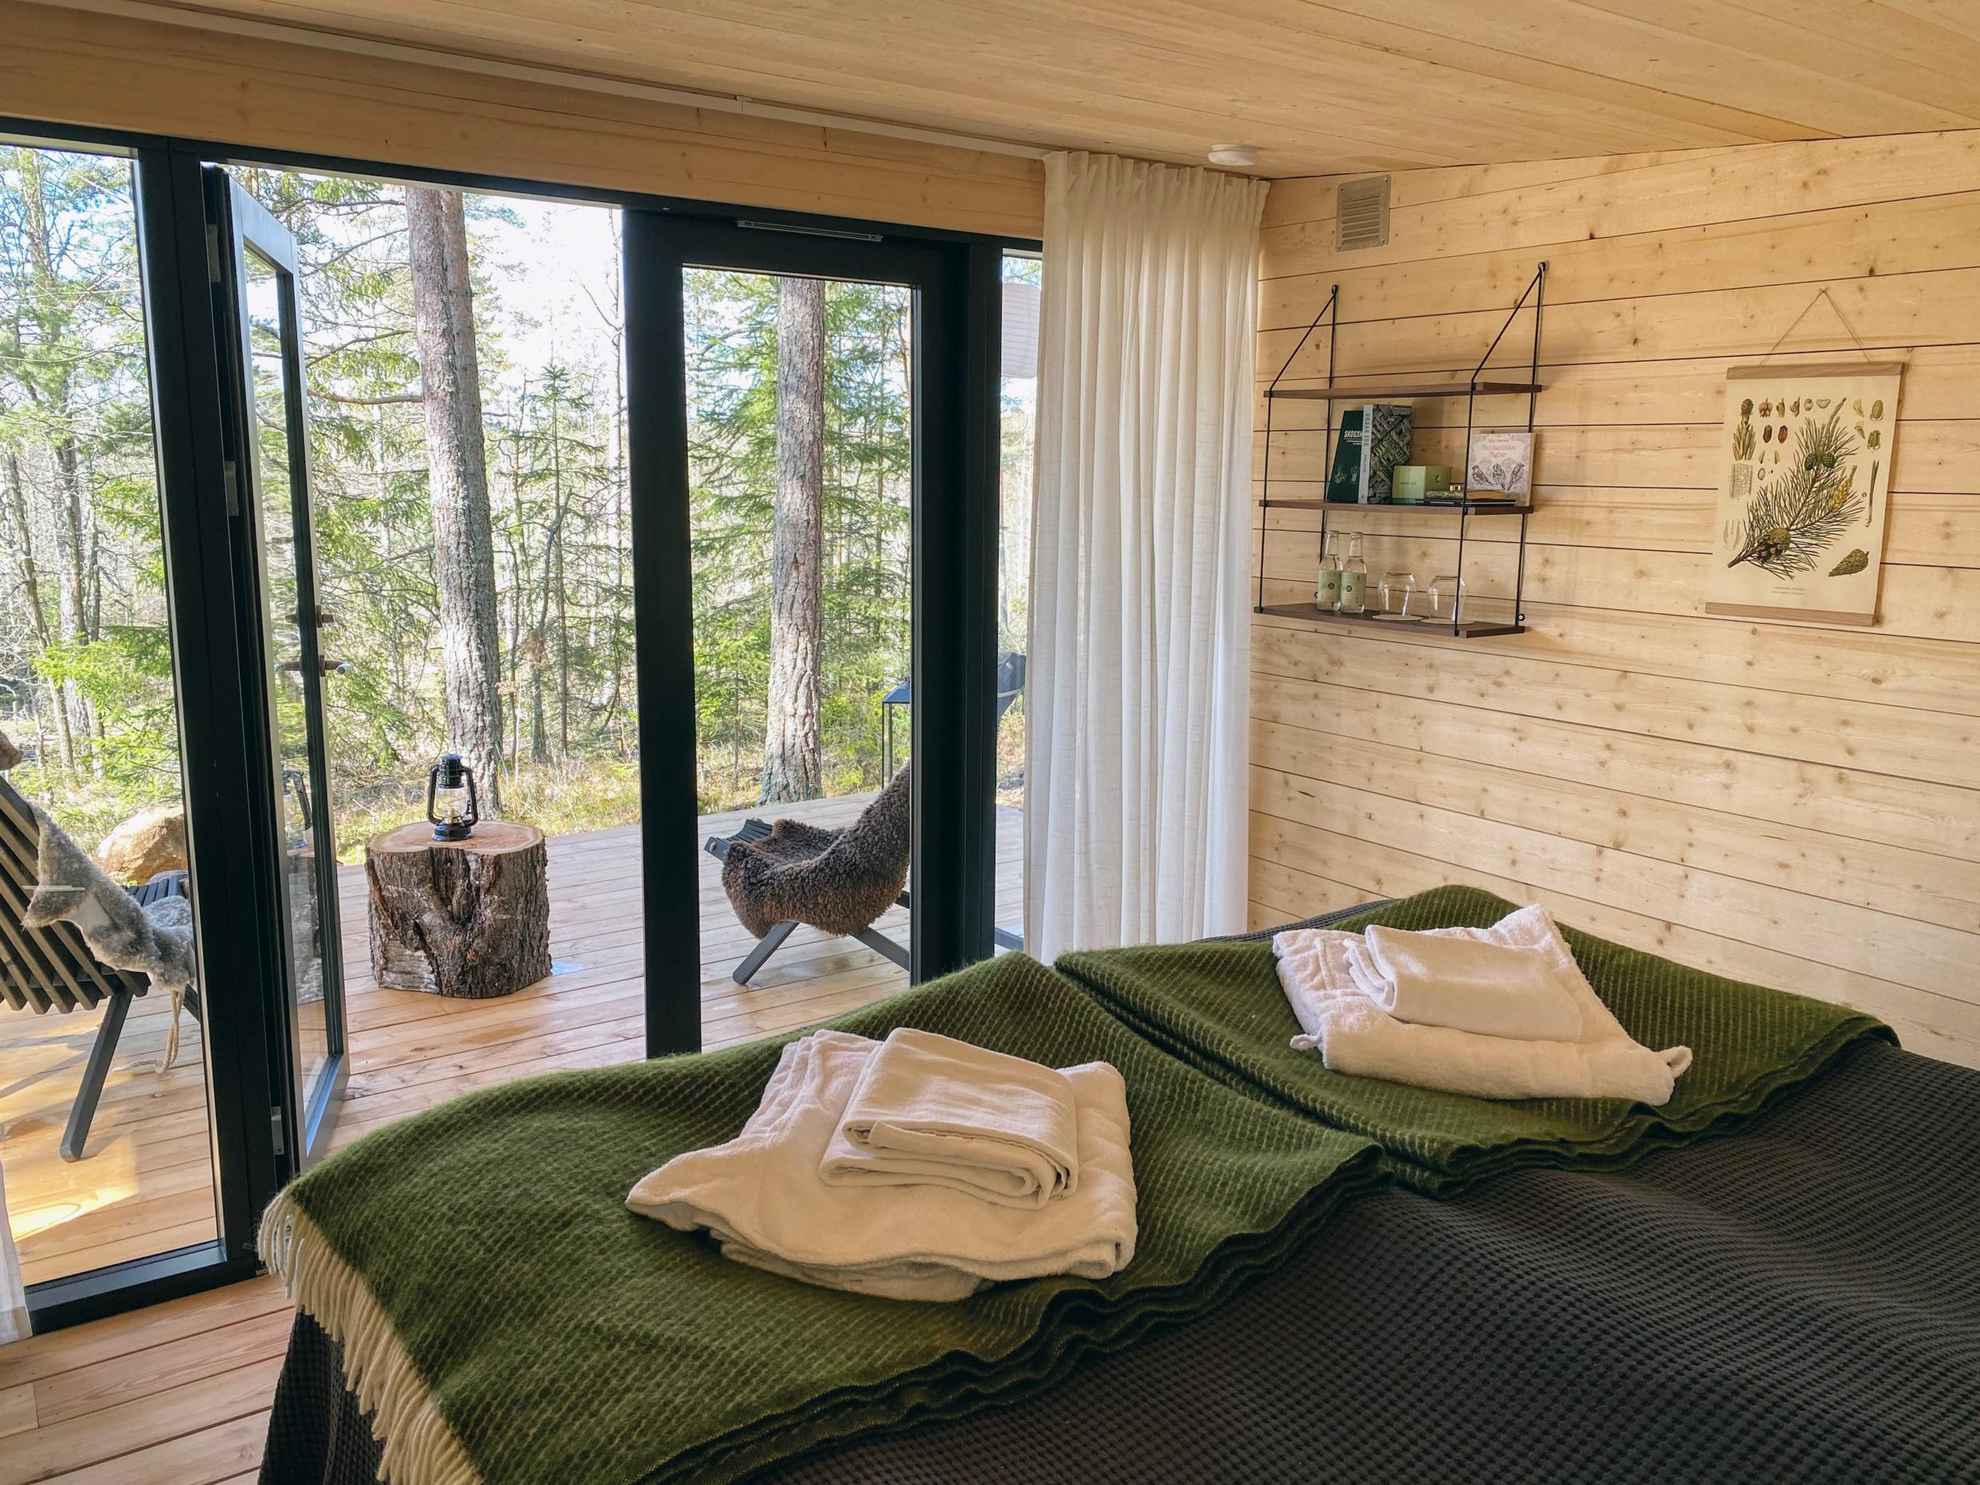 Zwei Betten befinden sich in einem Zimmer mit Holzwänden und -böden. Das Zimmer hat Glastüren zu einer Terrasse mit zwei Stühlen mit Blick in die Natur.